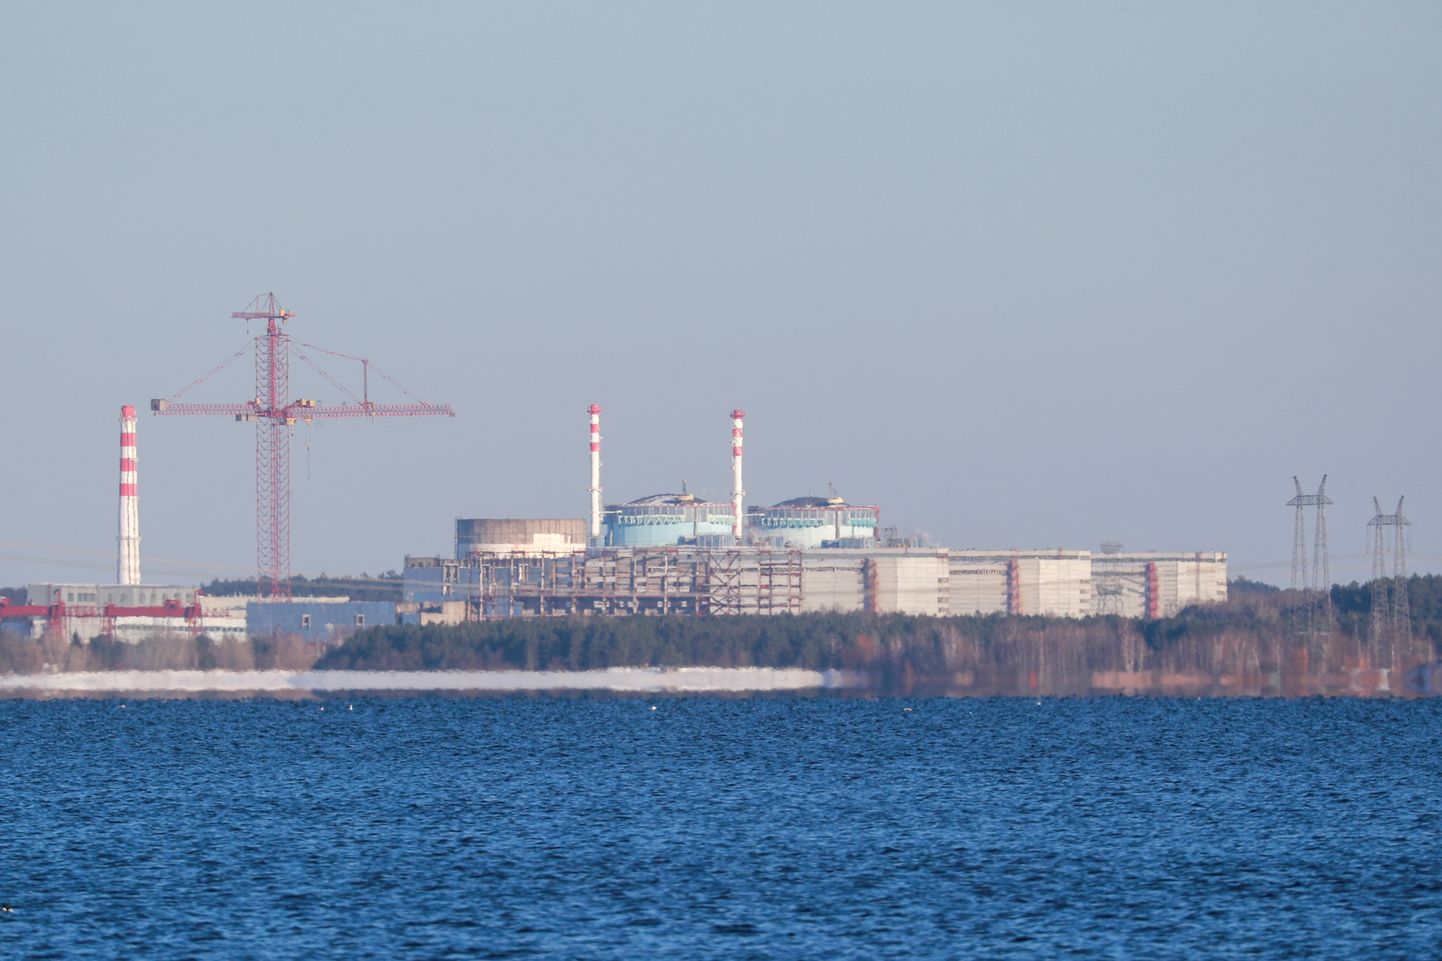 Hmeļnickas atomelektrostacija Ukrainas rietumos.